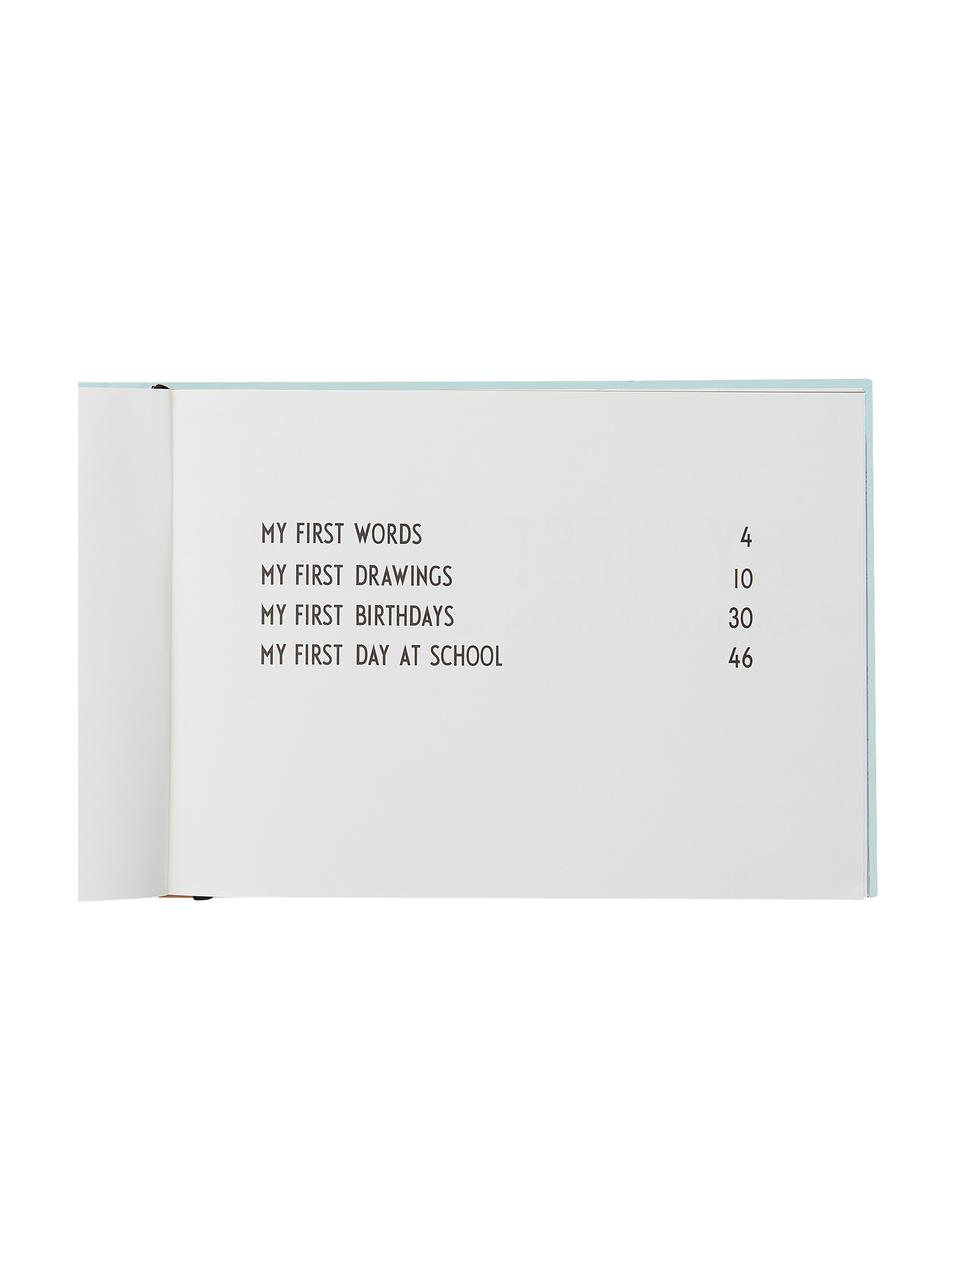 Pamětní knížka Little Memory Book, Papír, Modrá, Š 30 cm, V 21 cm